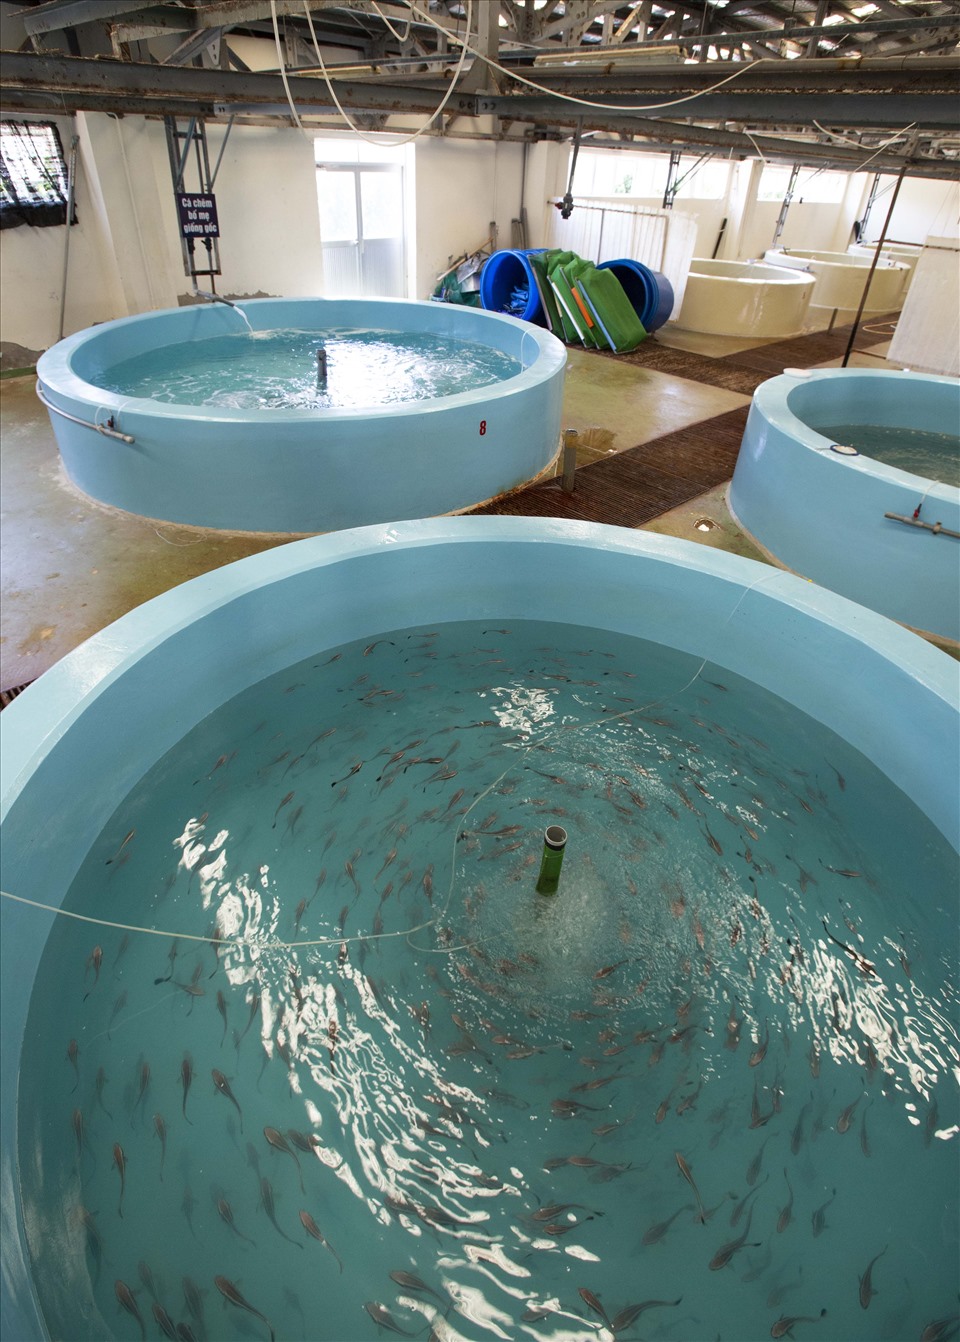 Cùng với cá song vua bố mẹ là hệ thống ươm nuôi cá giống trong các bể chuyên dụng để cho ra đời con giống đồng đều, chất lượng. Ảnh: Trọng Chính